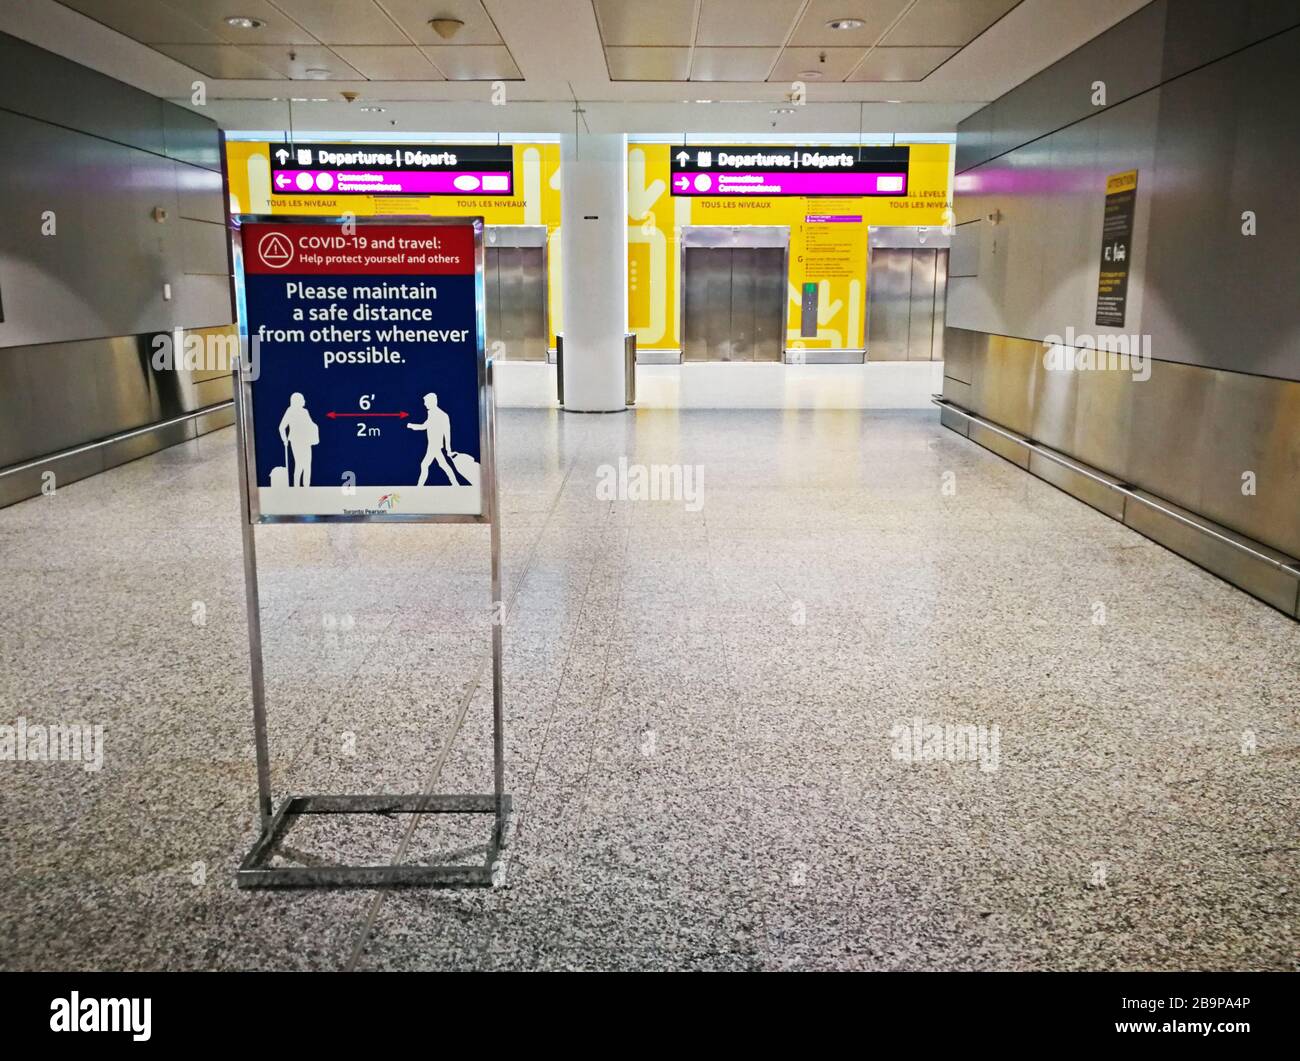 Signe rappelant aux voyageurs aériens de garder une distance de sécurité de 2 mètres l'un de l'autre pendant la Covid-19 a.k.a nouvelle pandémie de coronavirus dans l'aéroport international Pearson de Toronto presque vide le 24 mars 2020. Banque D'Images